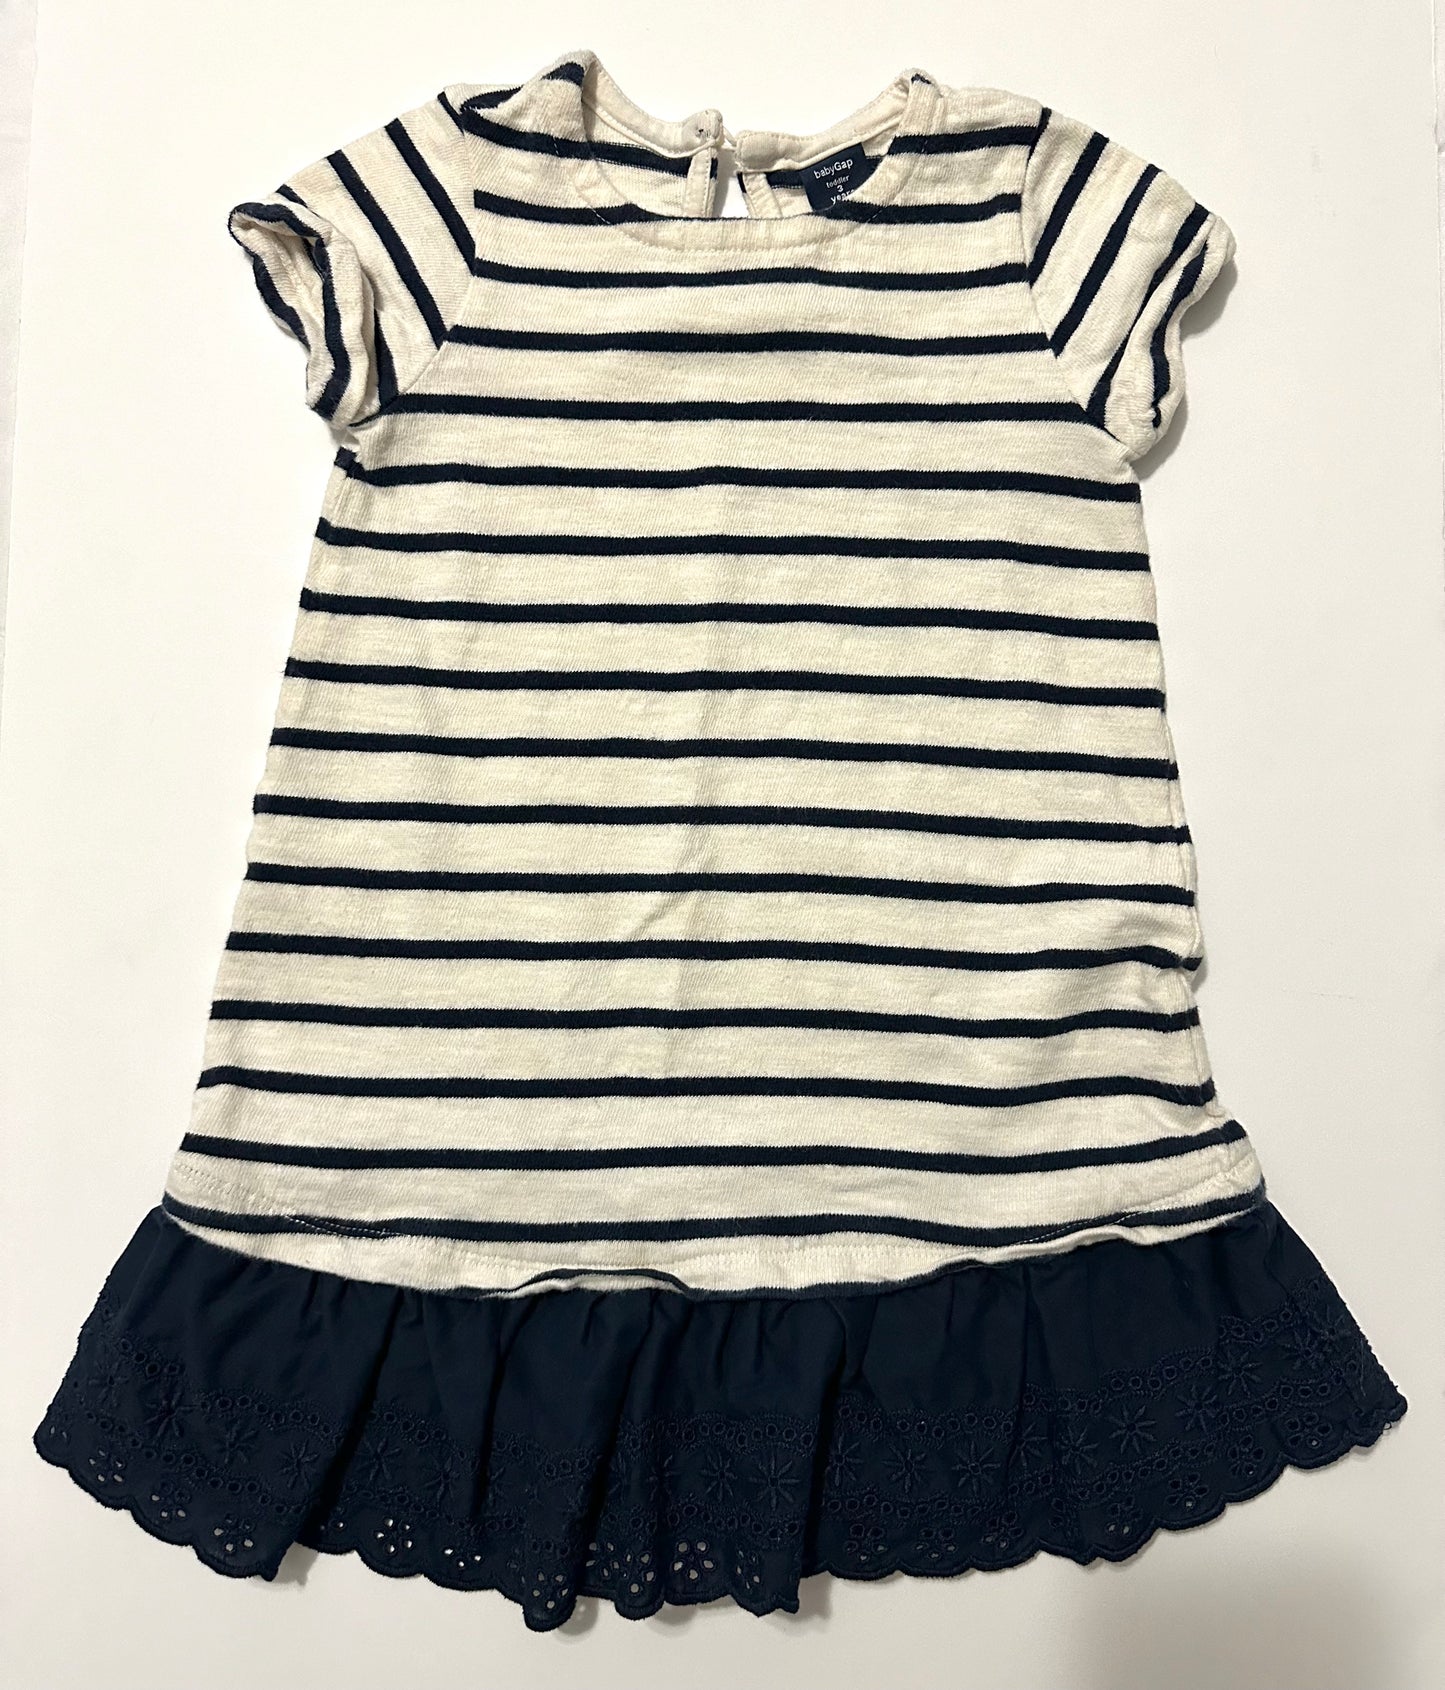 Baby Gap size 3 toddler dress